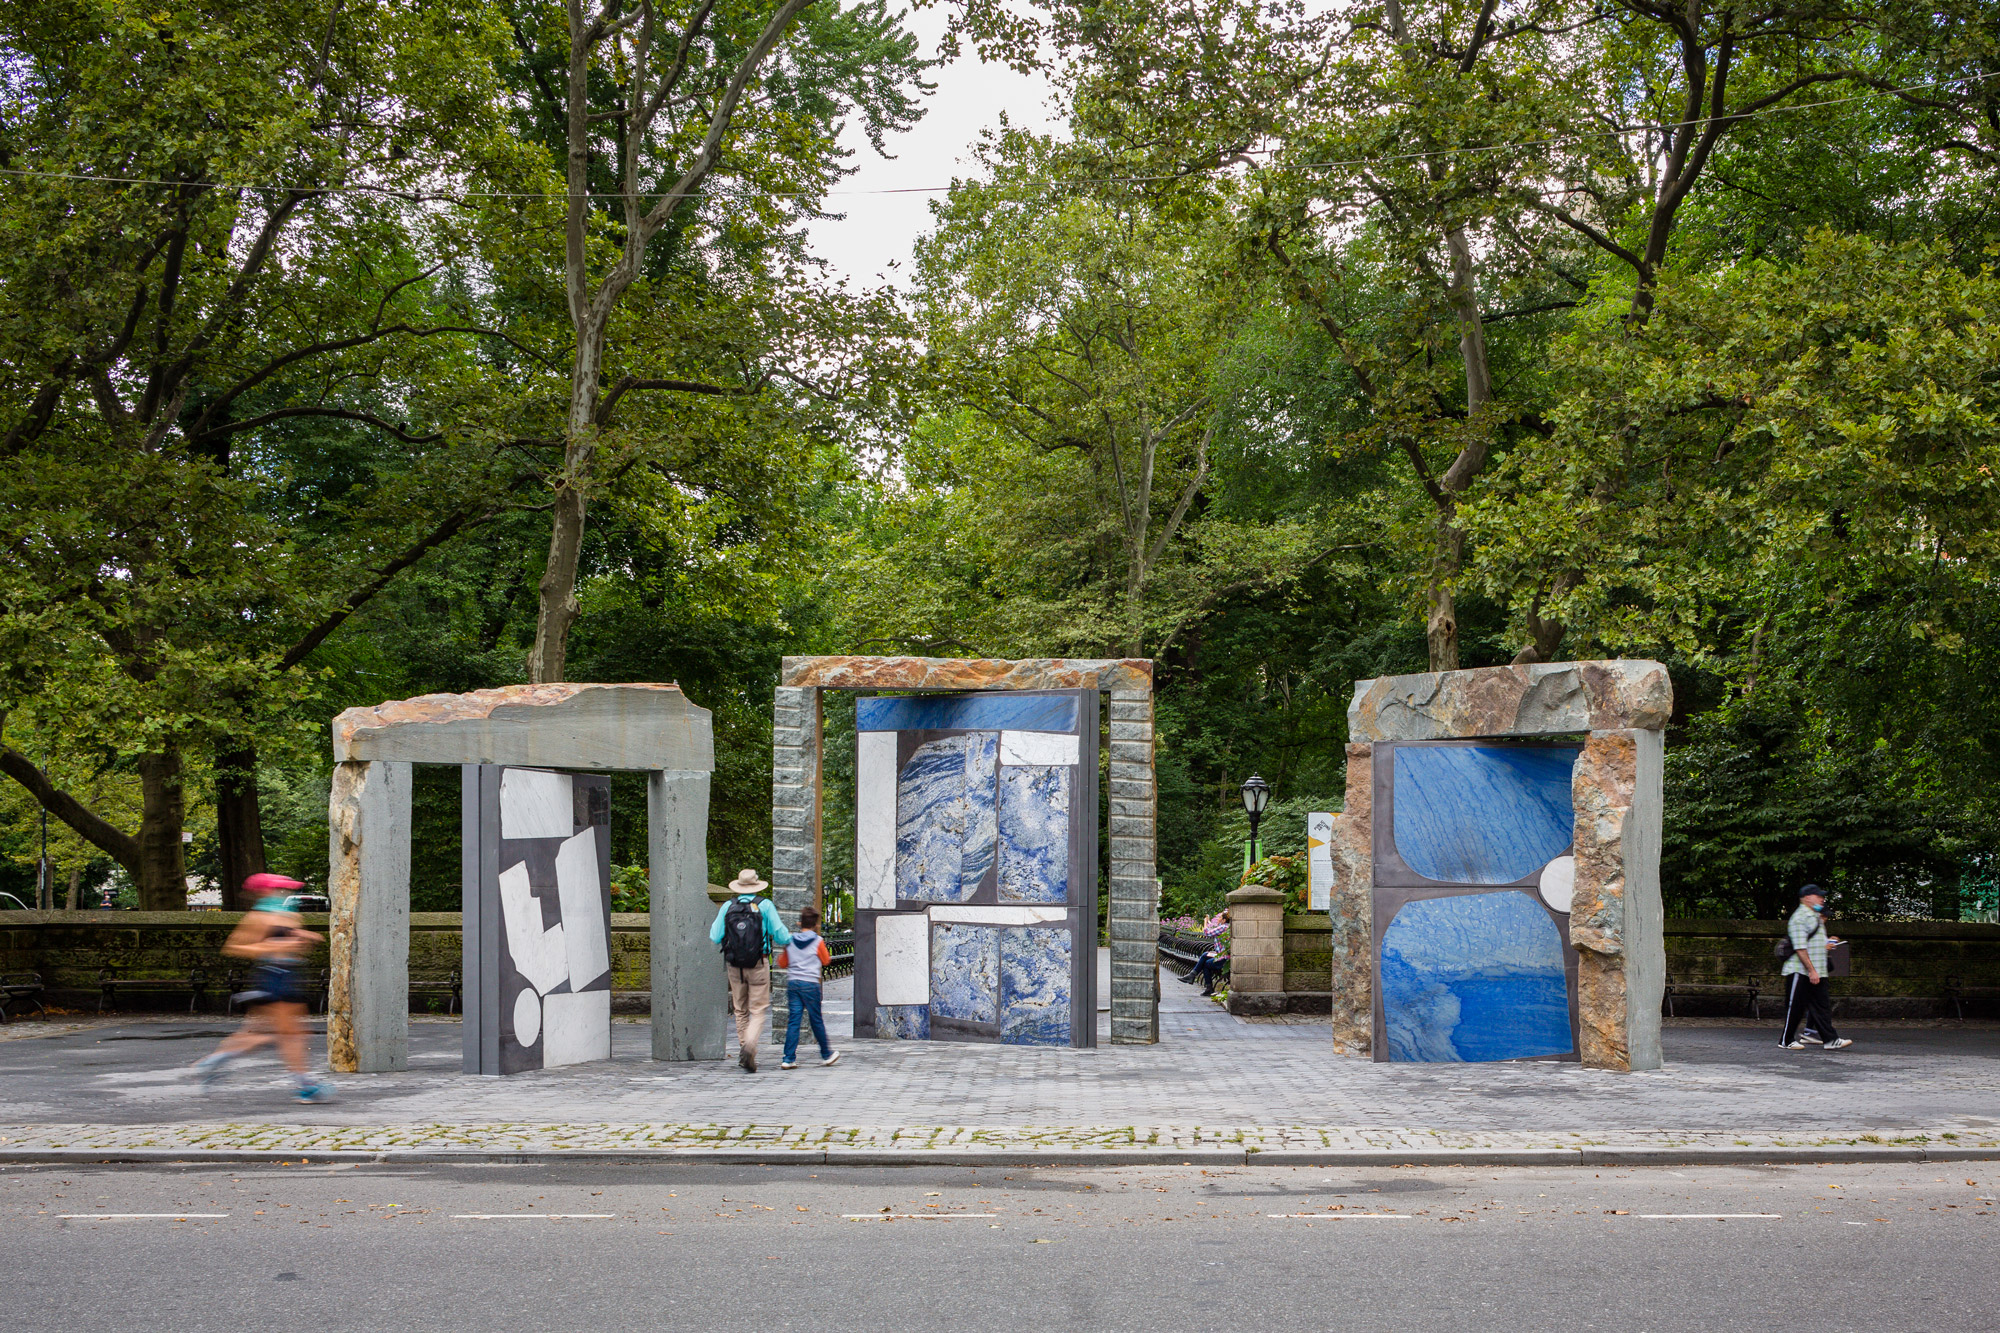 doors of temporary art installations